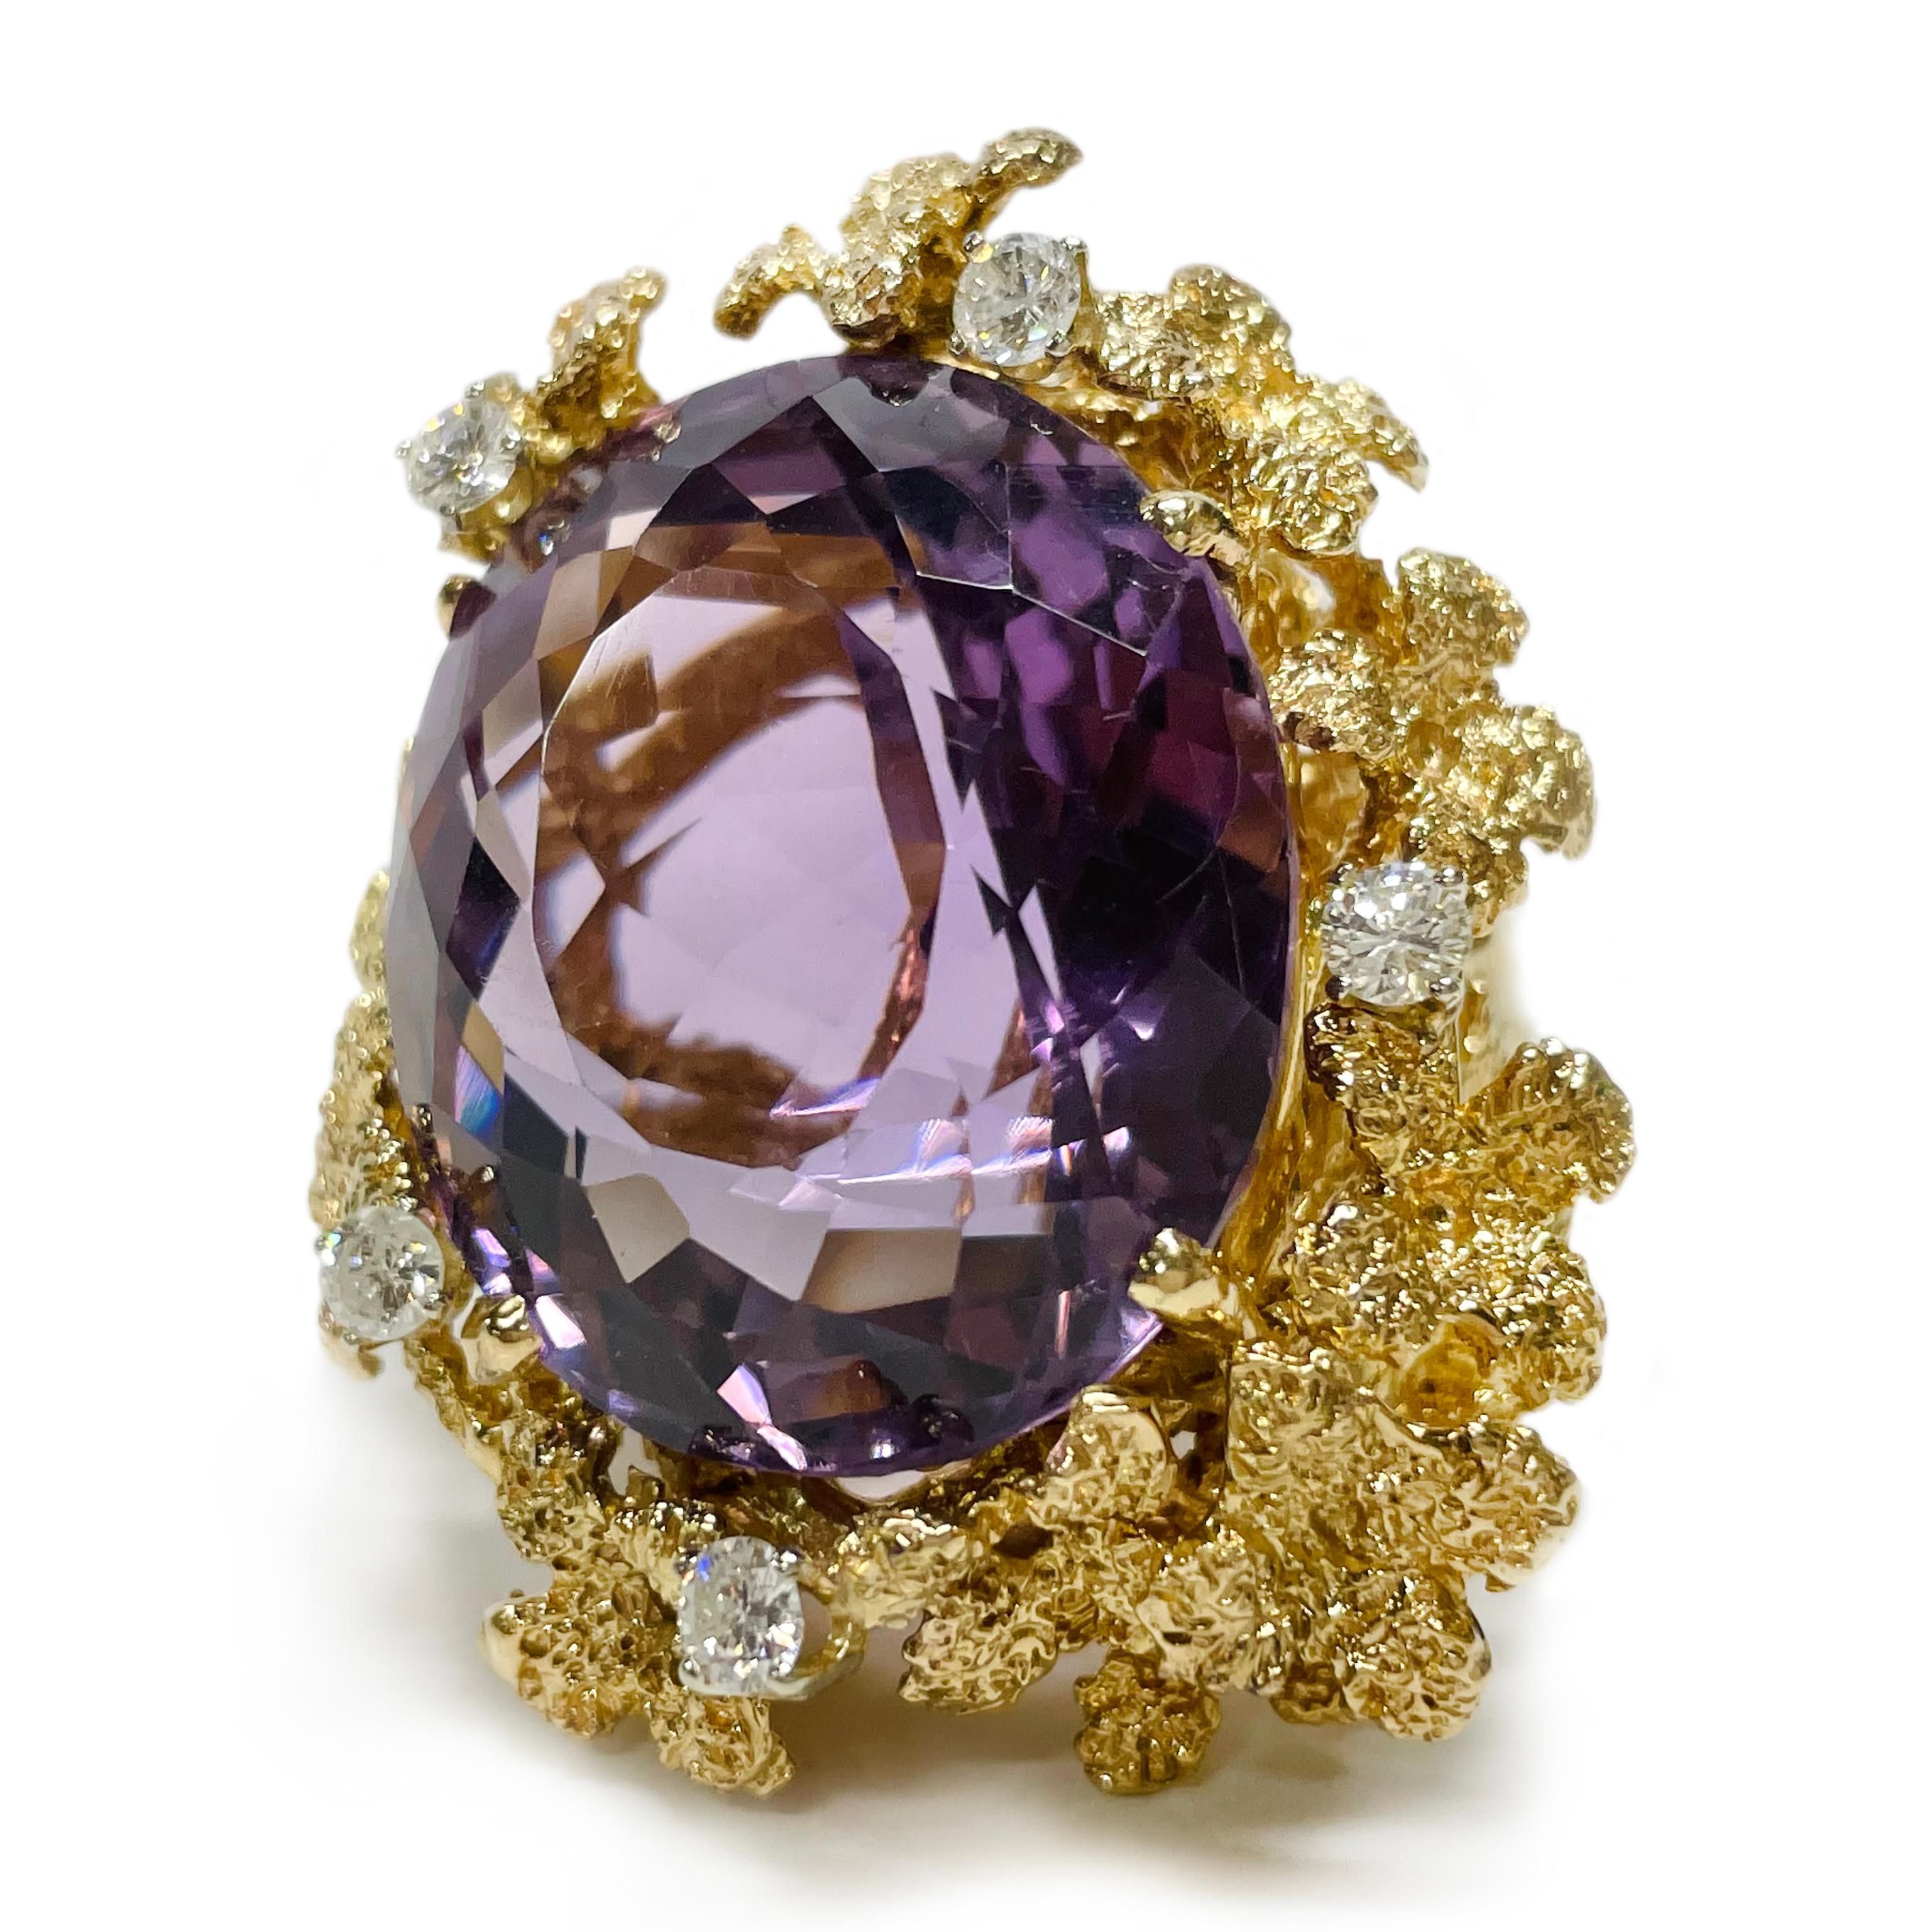 18 Karat Gelbgold Amethyst Diamant Cocktail Ring. Der Ring besteht aus einem 27,7 x 23,3 mm großen Amethyst im Ovalschliff, fünf runden 3,4 mm großen Diamanten in Zackenfassung und mehreren strukturierten Goldblumen. Die Diamanten haben ein